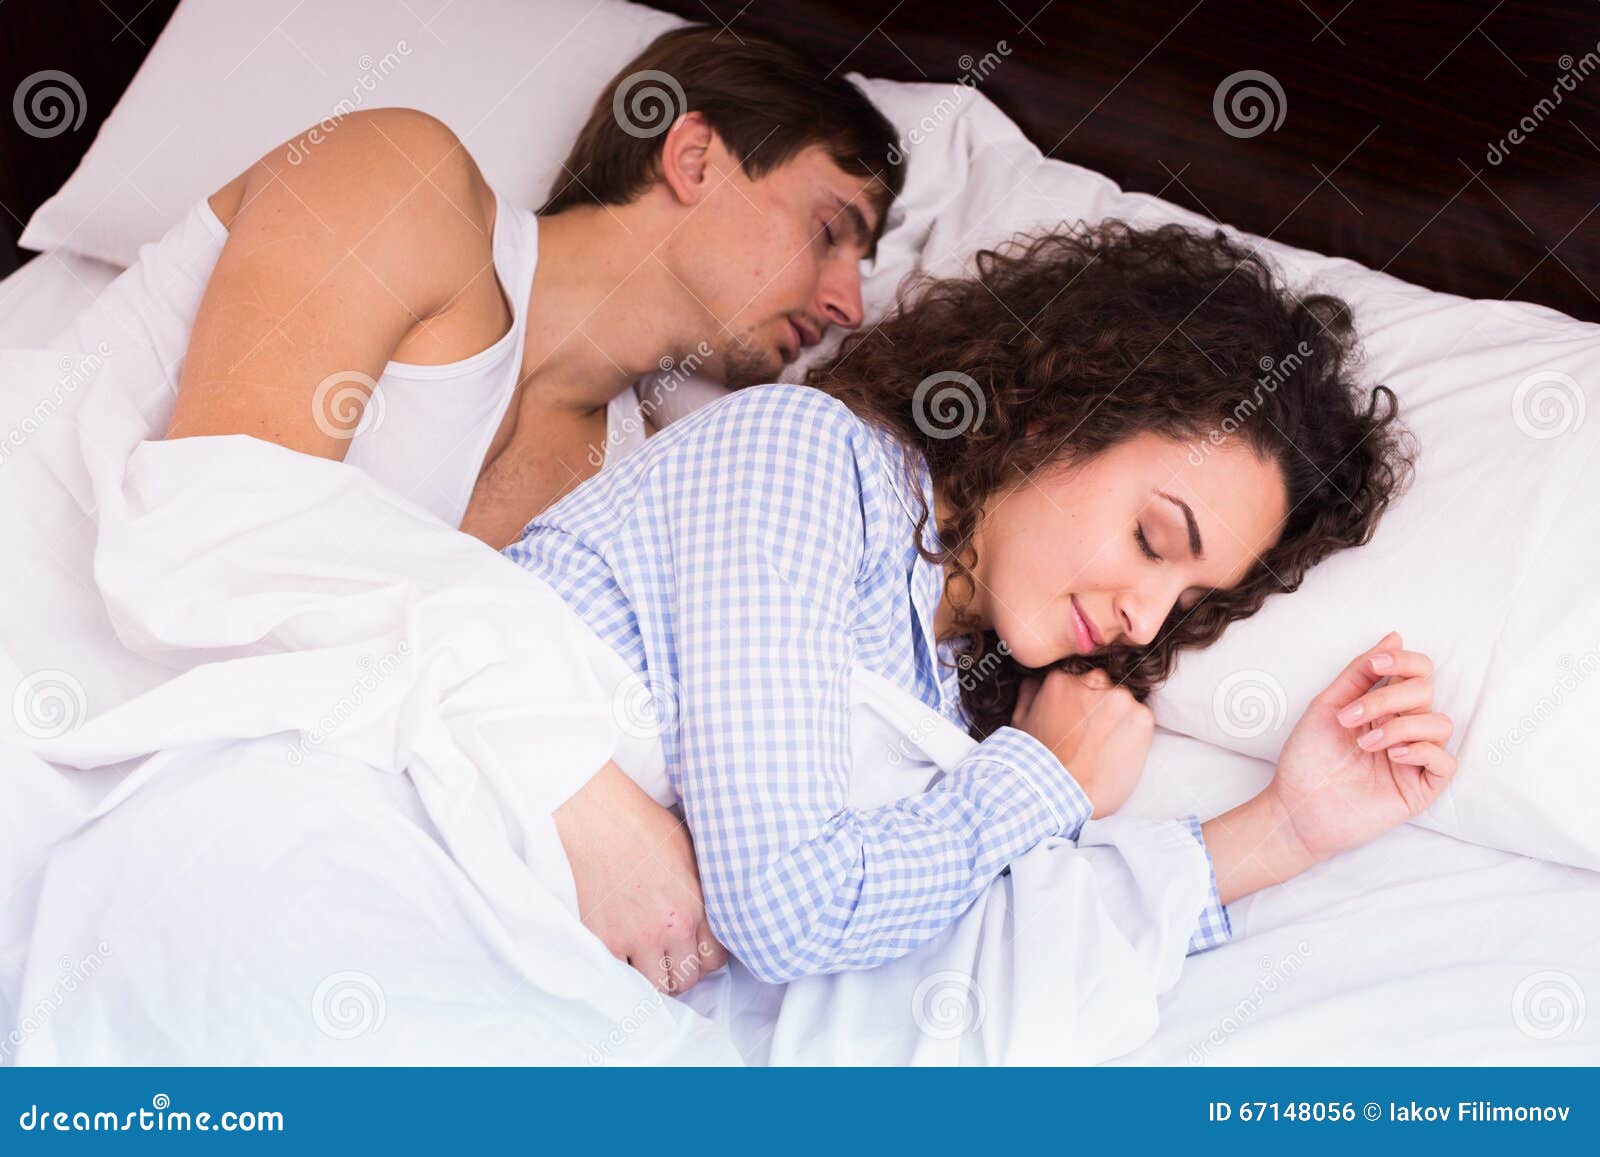 Чужая русская жена спящую. Молодая жена в постели. Молодые жены спят. Молодые муж и жена спят.